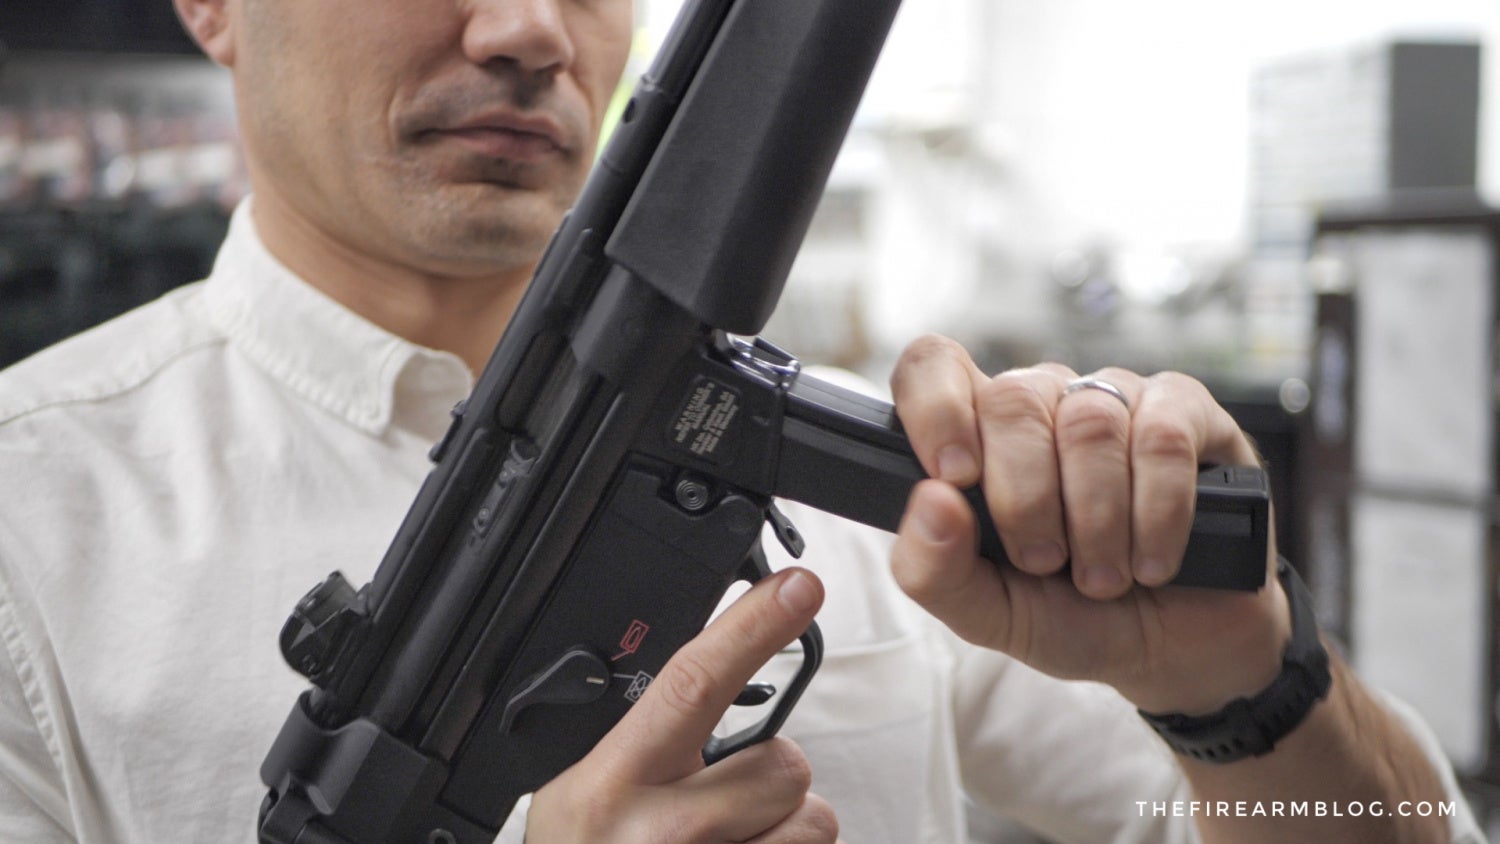 Ho Ho Ho: The New HK SP5 - Heckler & Koch Drops A Real MP5